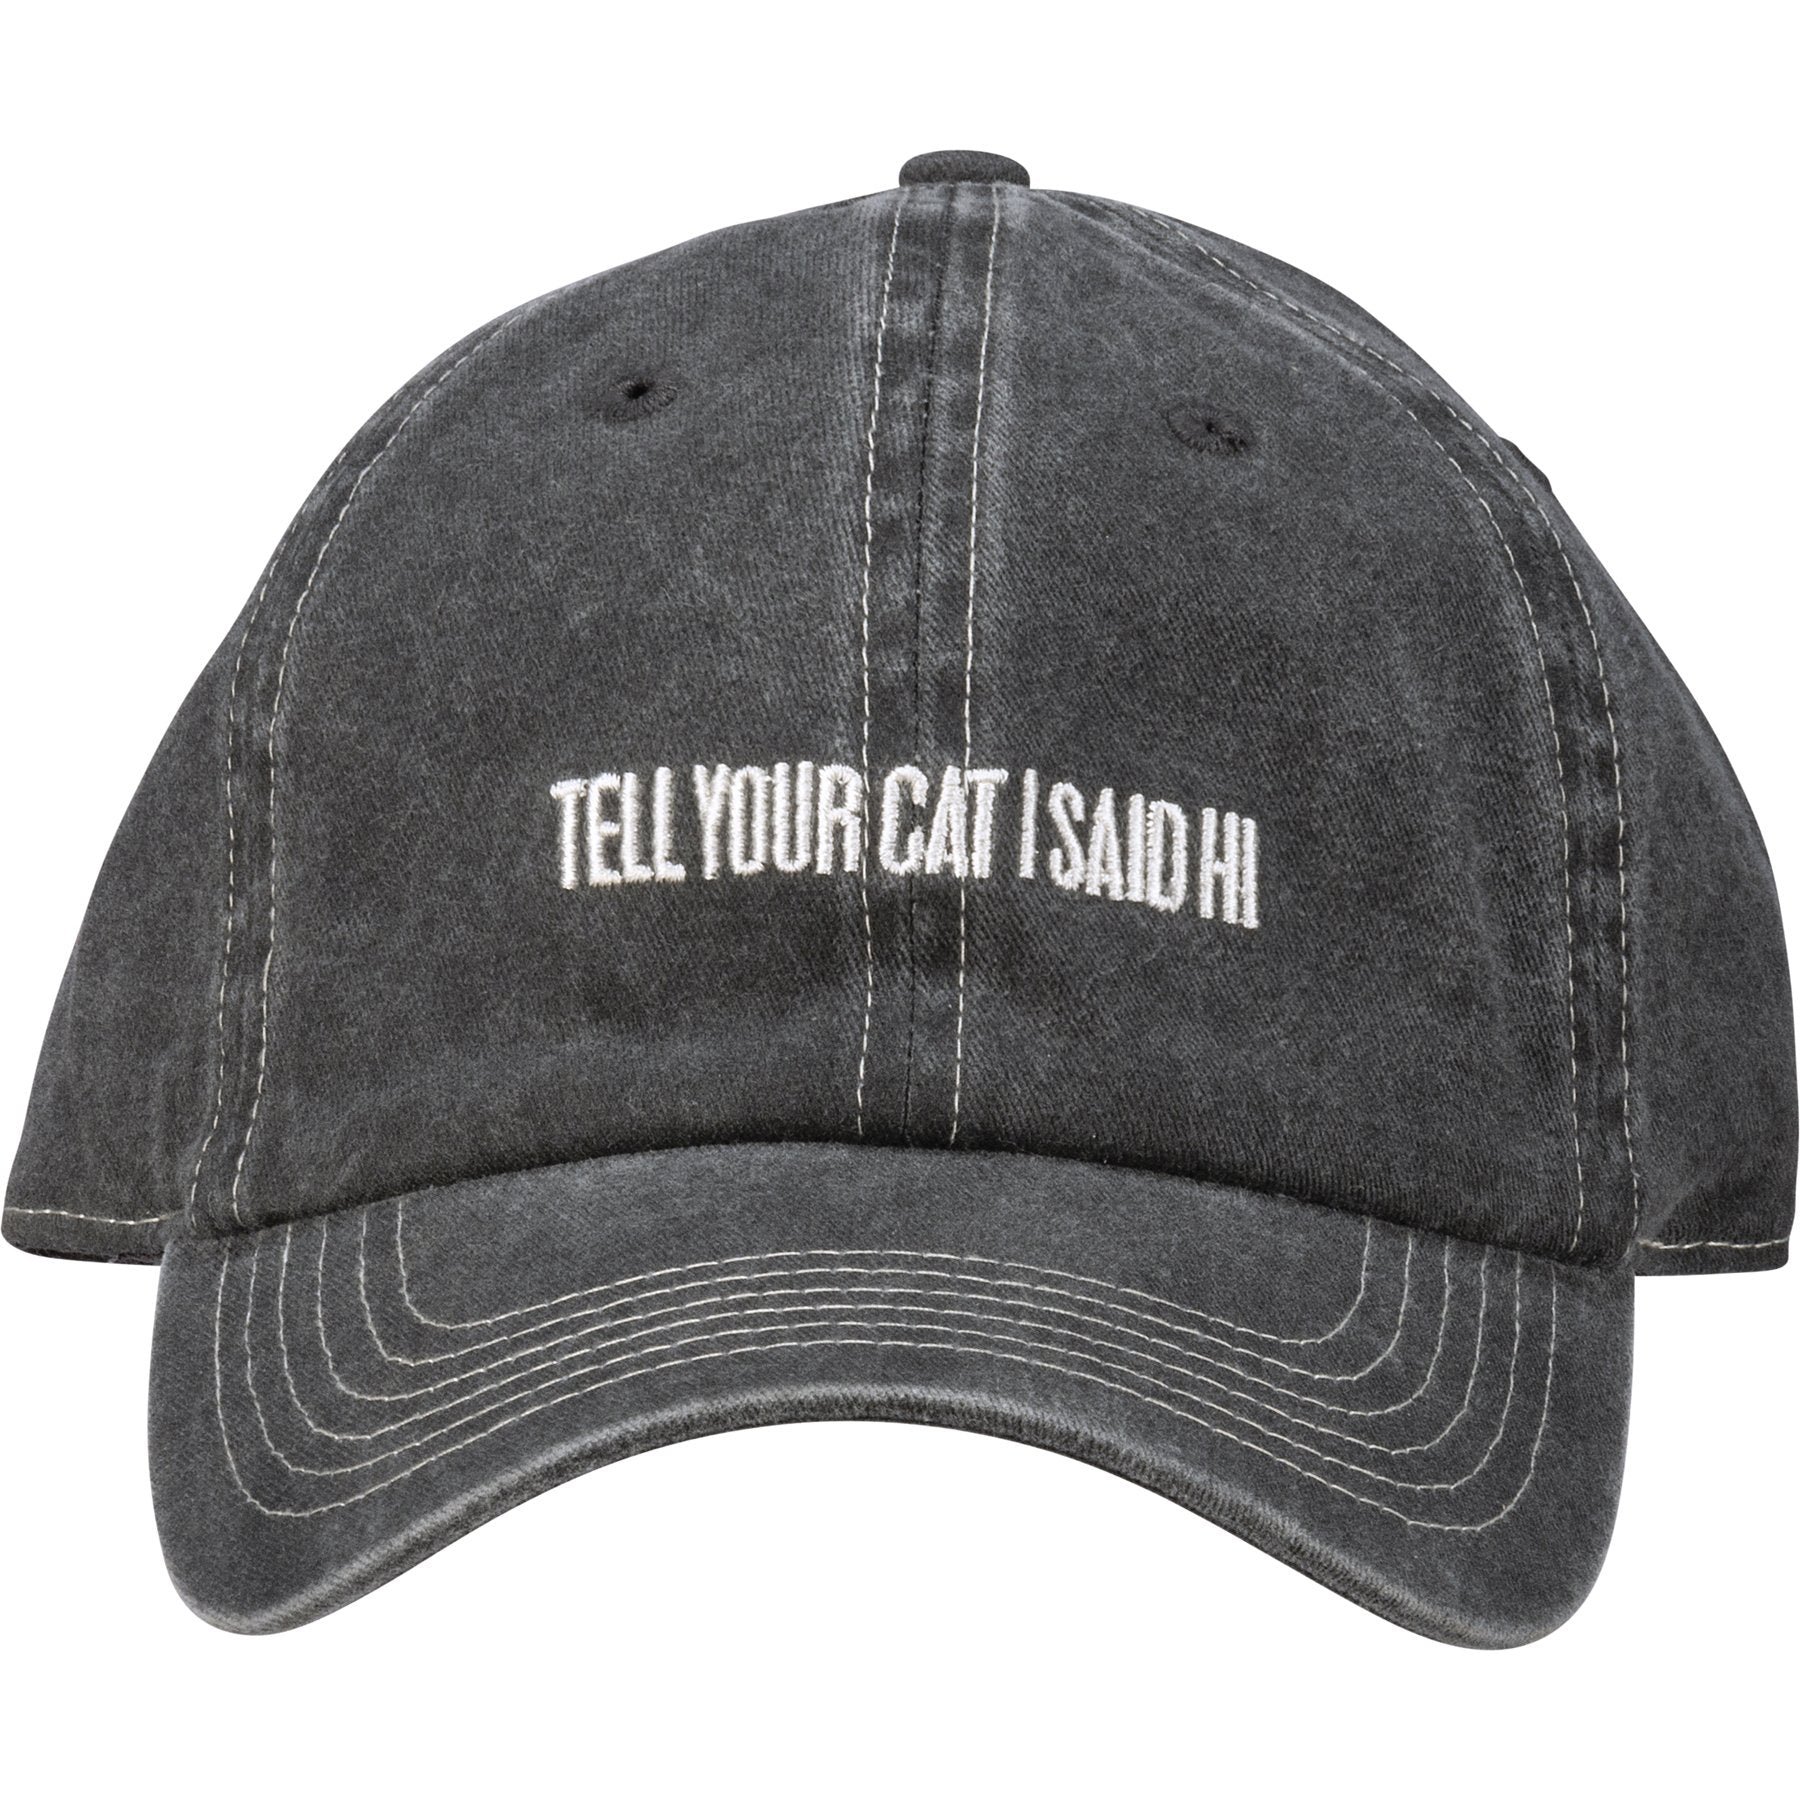 Cat Lover Baseball Cap, Tell Your Cat I Said Hi Baseball Cap